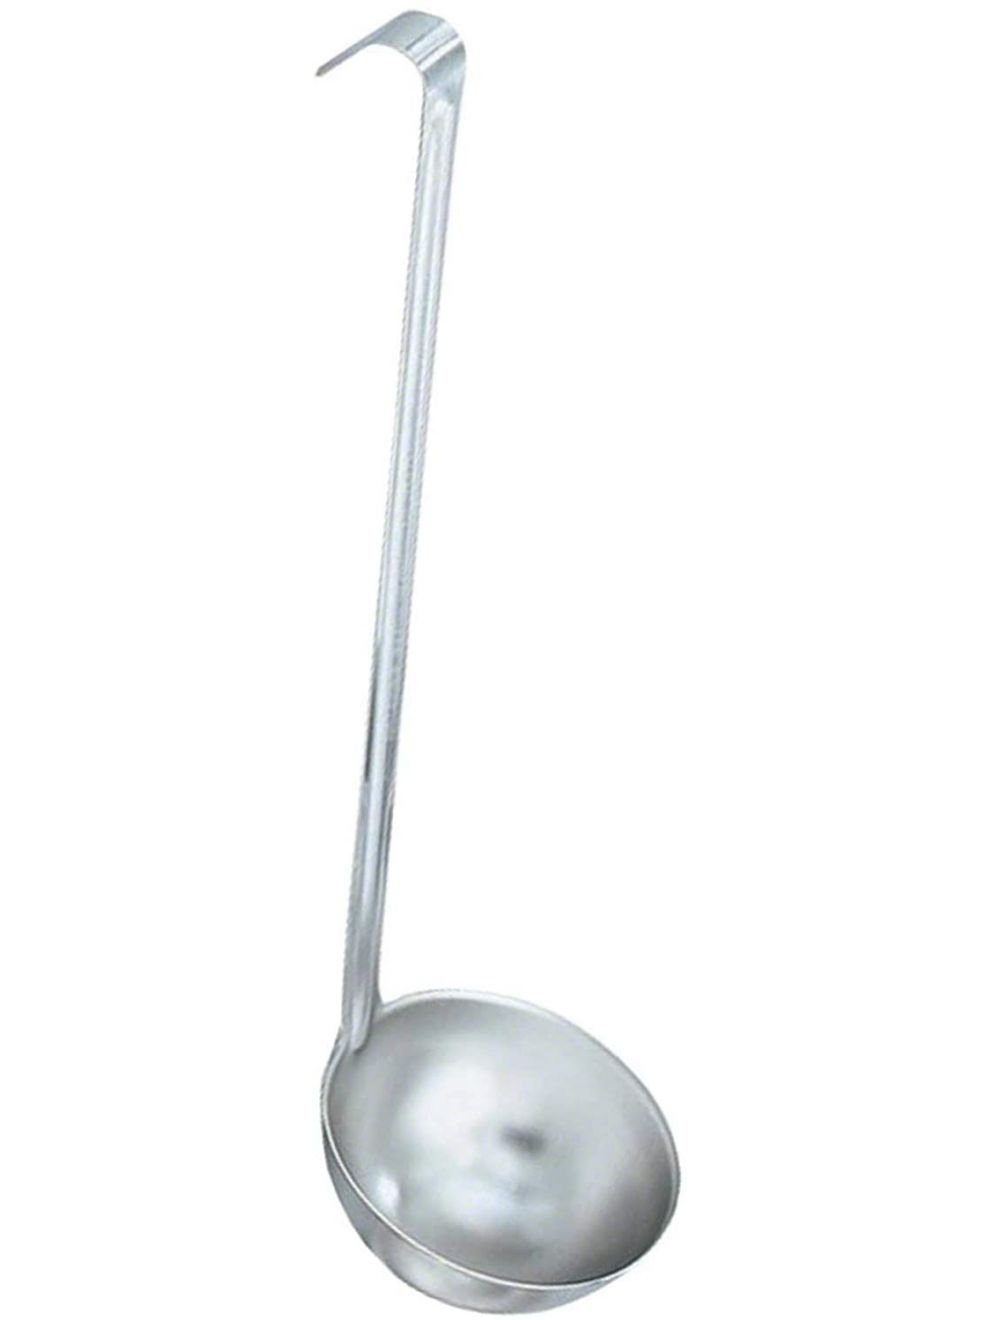 Raj Professional Ladle Spoon, Silver, 65 ml, RPL000